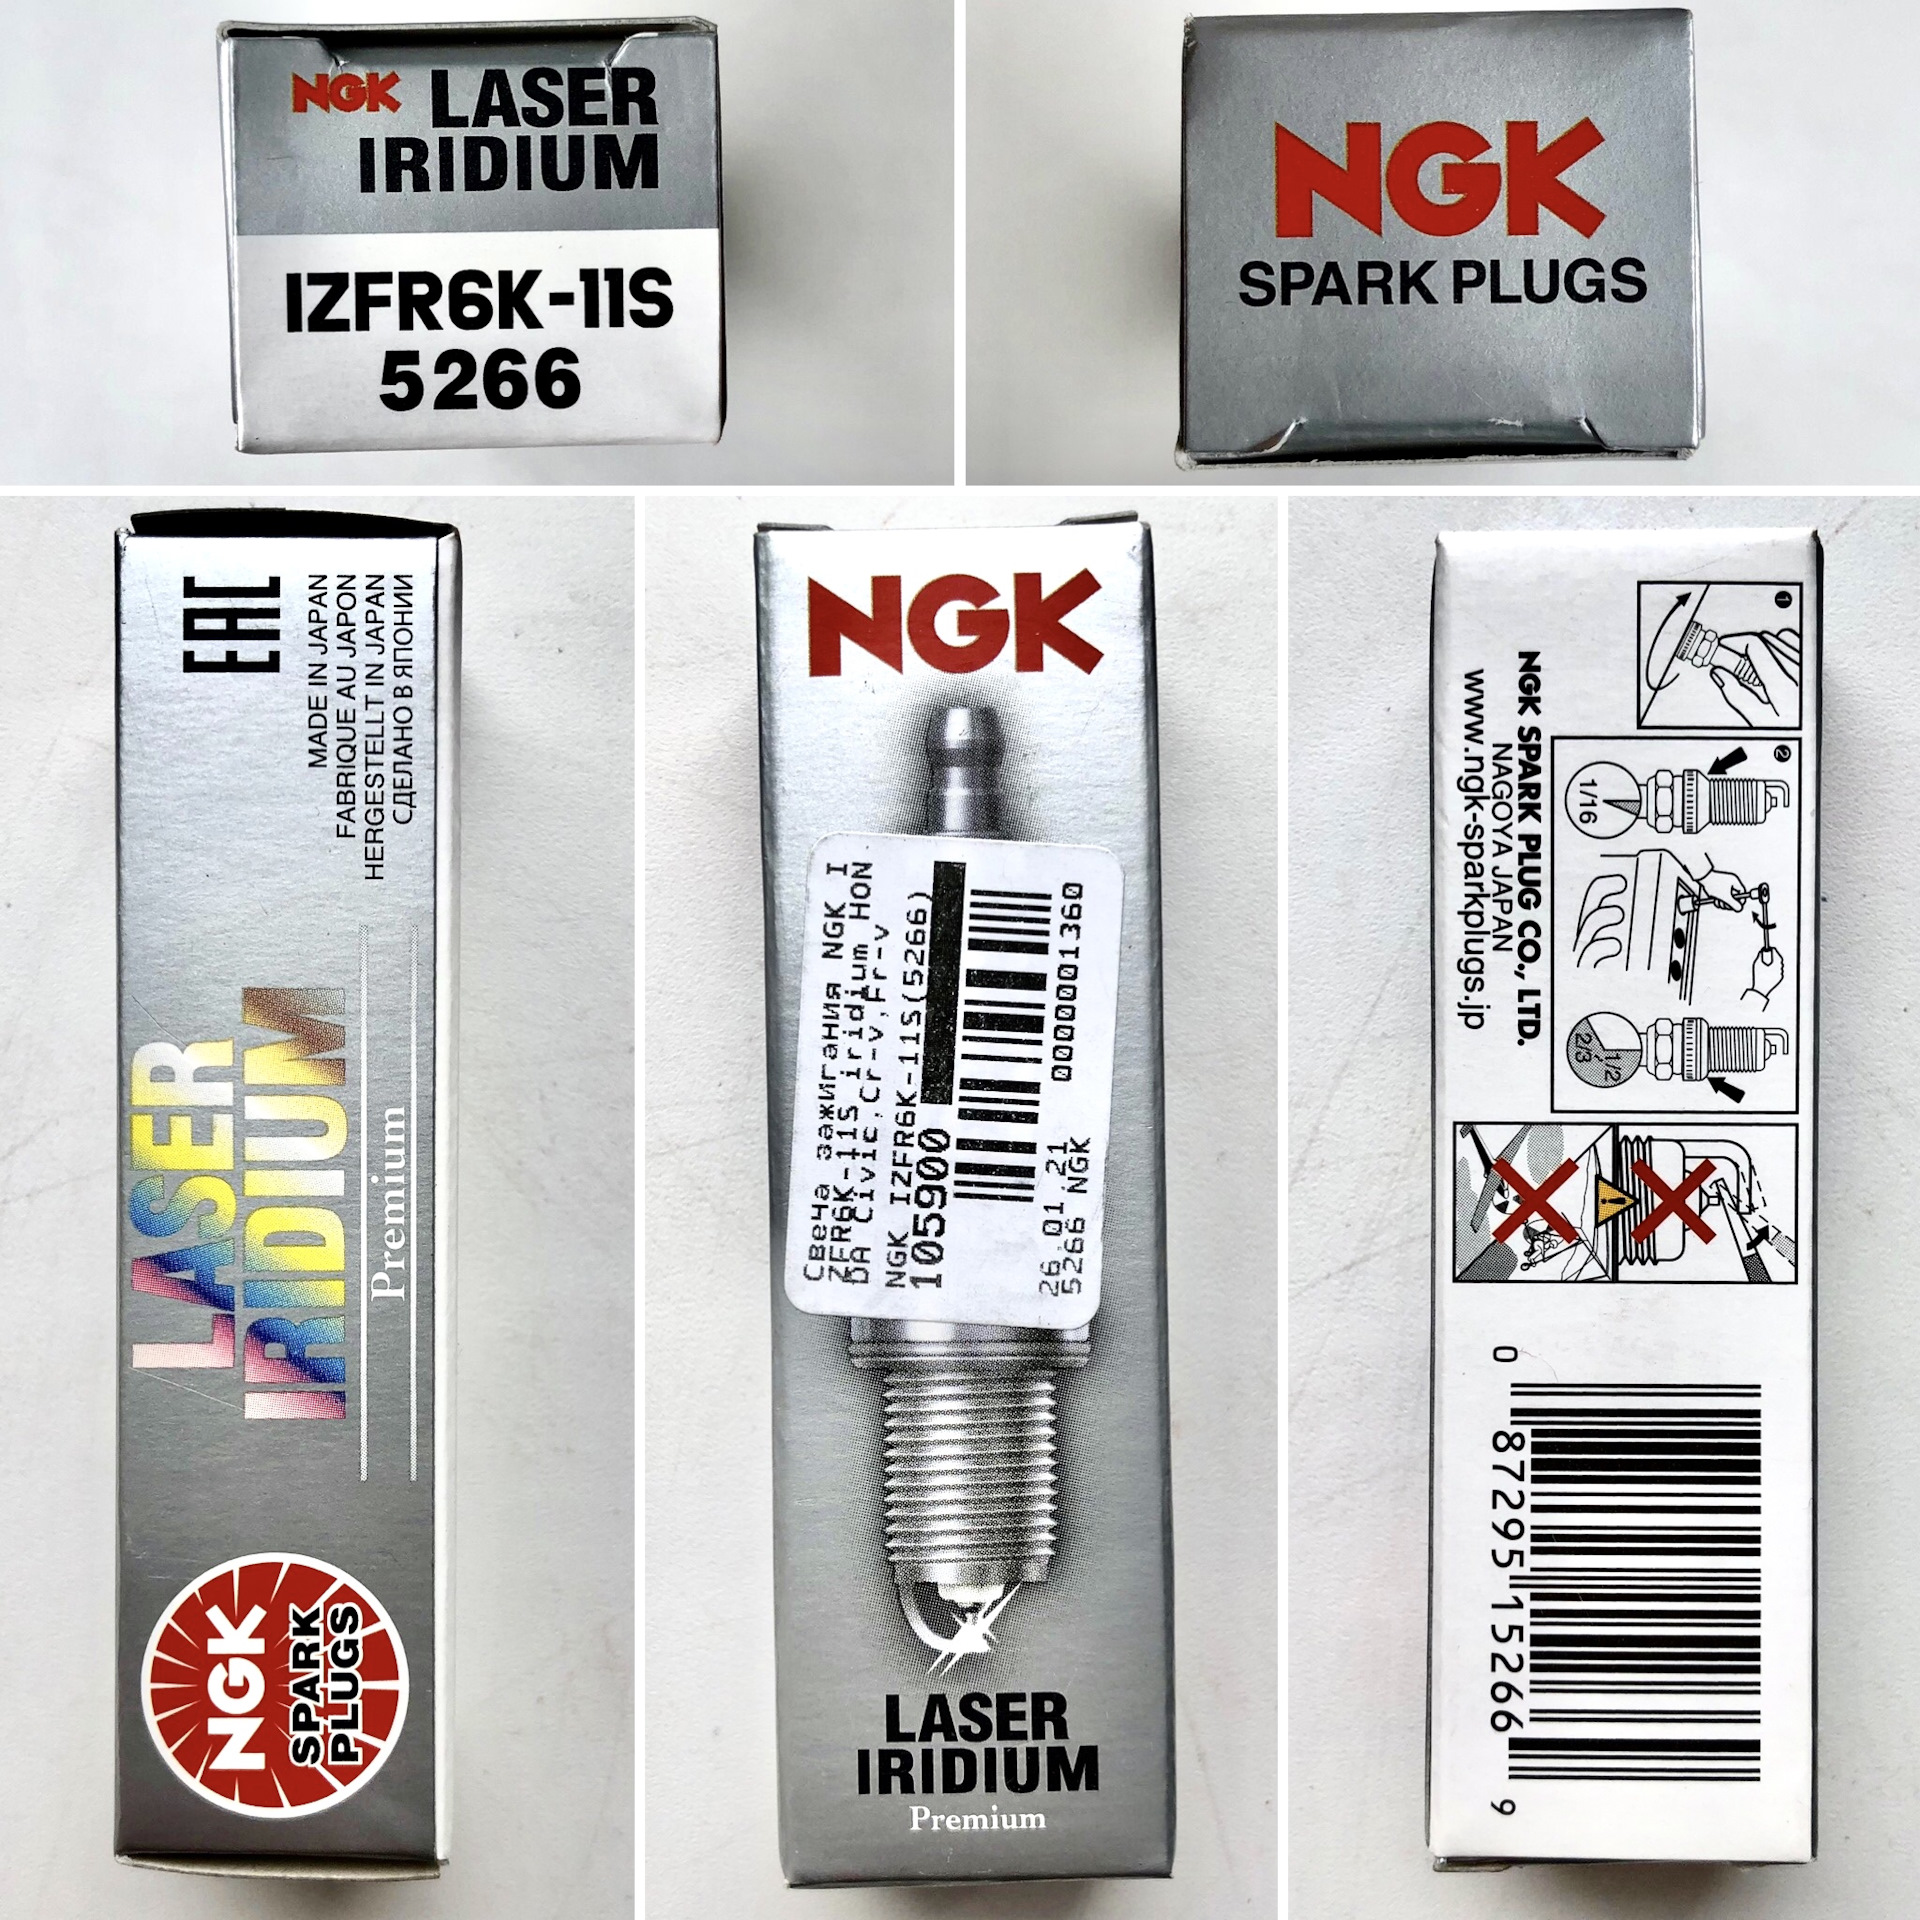 NGK izfr6k-11 размер ключа. Izfr6k-11s от NGK В упаковке NGK. Свечи зажигания Хонда Аккорд 8 2.4. Оригинальная упаковка свечи NGK izfr6k11s.